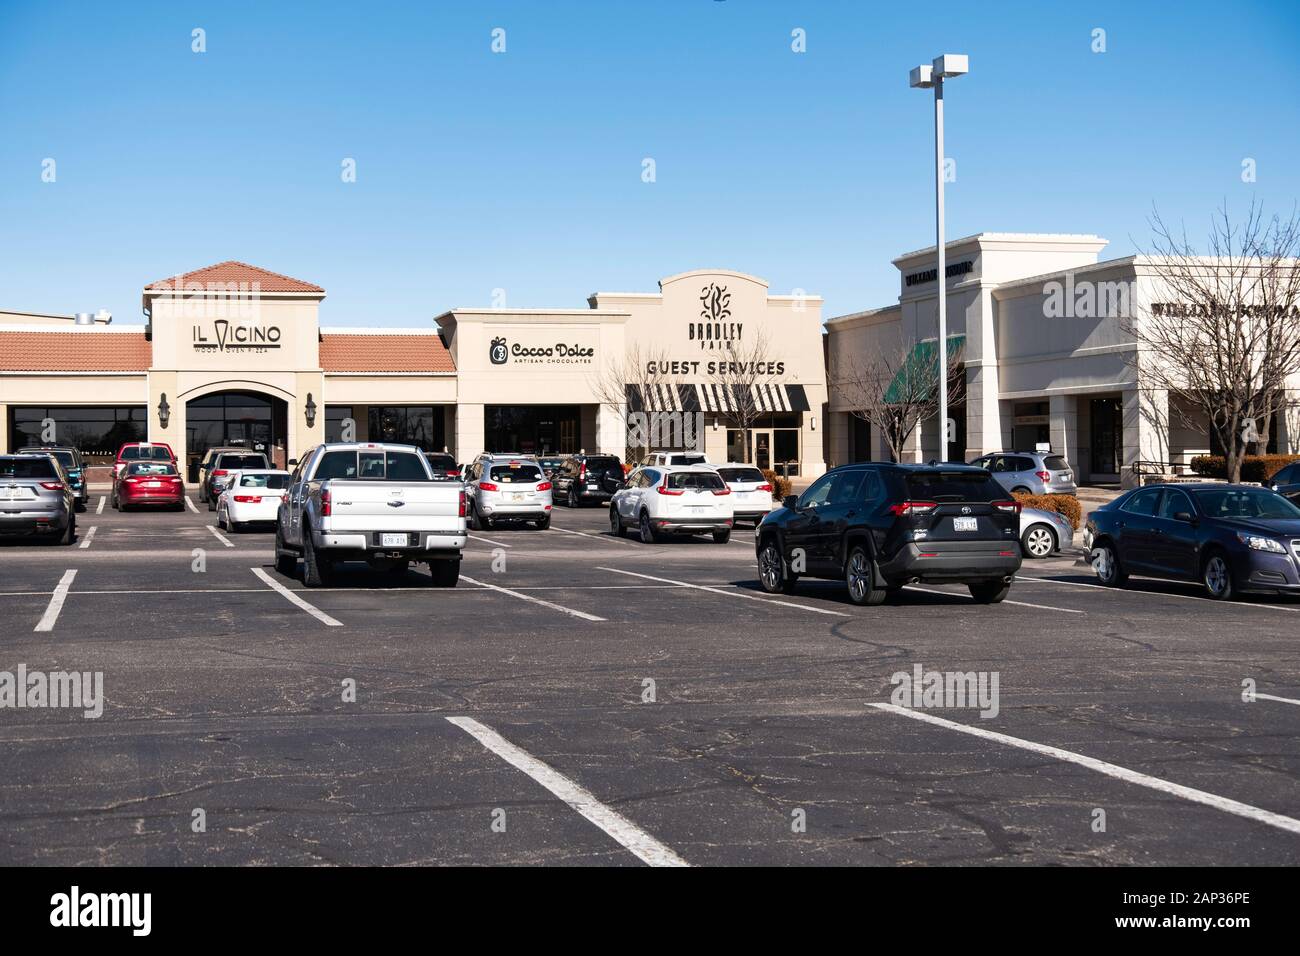 Bradley Fair Shopping Centre, à Wichita, Kansas, États-Unis. Parking, boutique de chocolat et une pizzeria. Banque D'Images